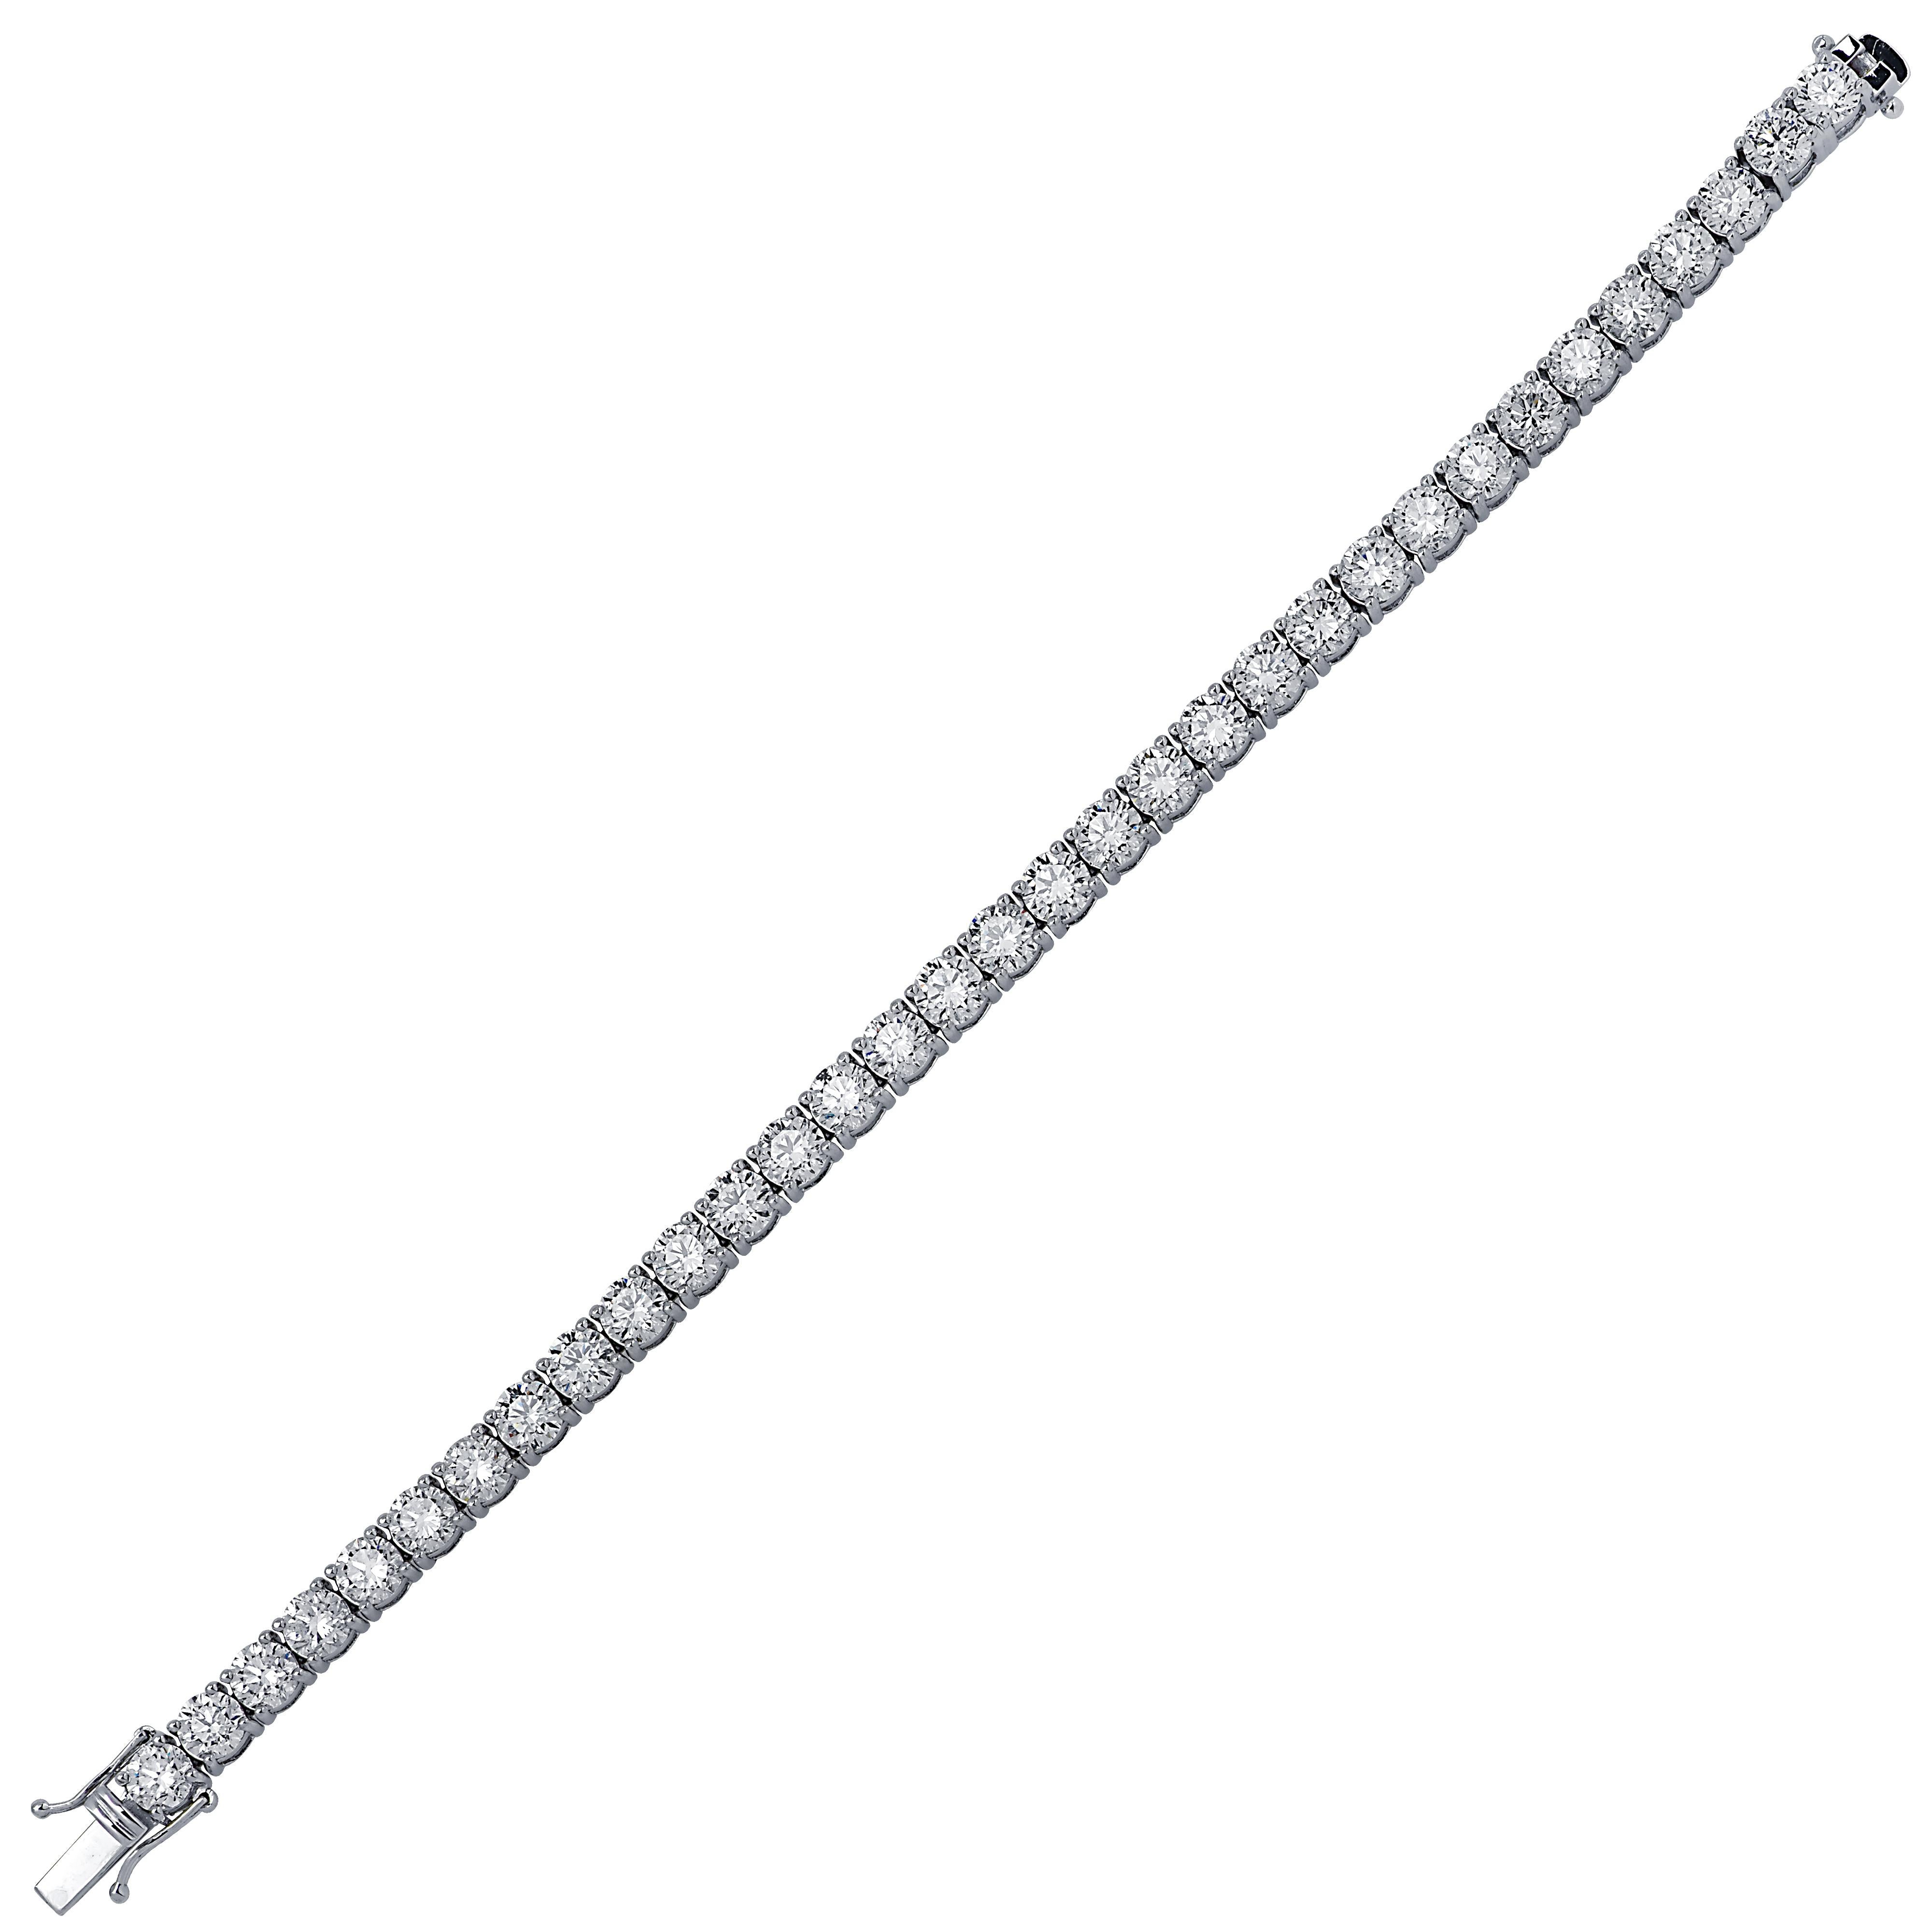 Contemporary Vivid Diamonds 14.62 Carat Diamond Tennis Bracelet